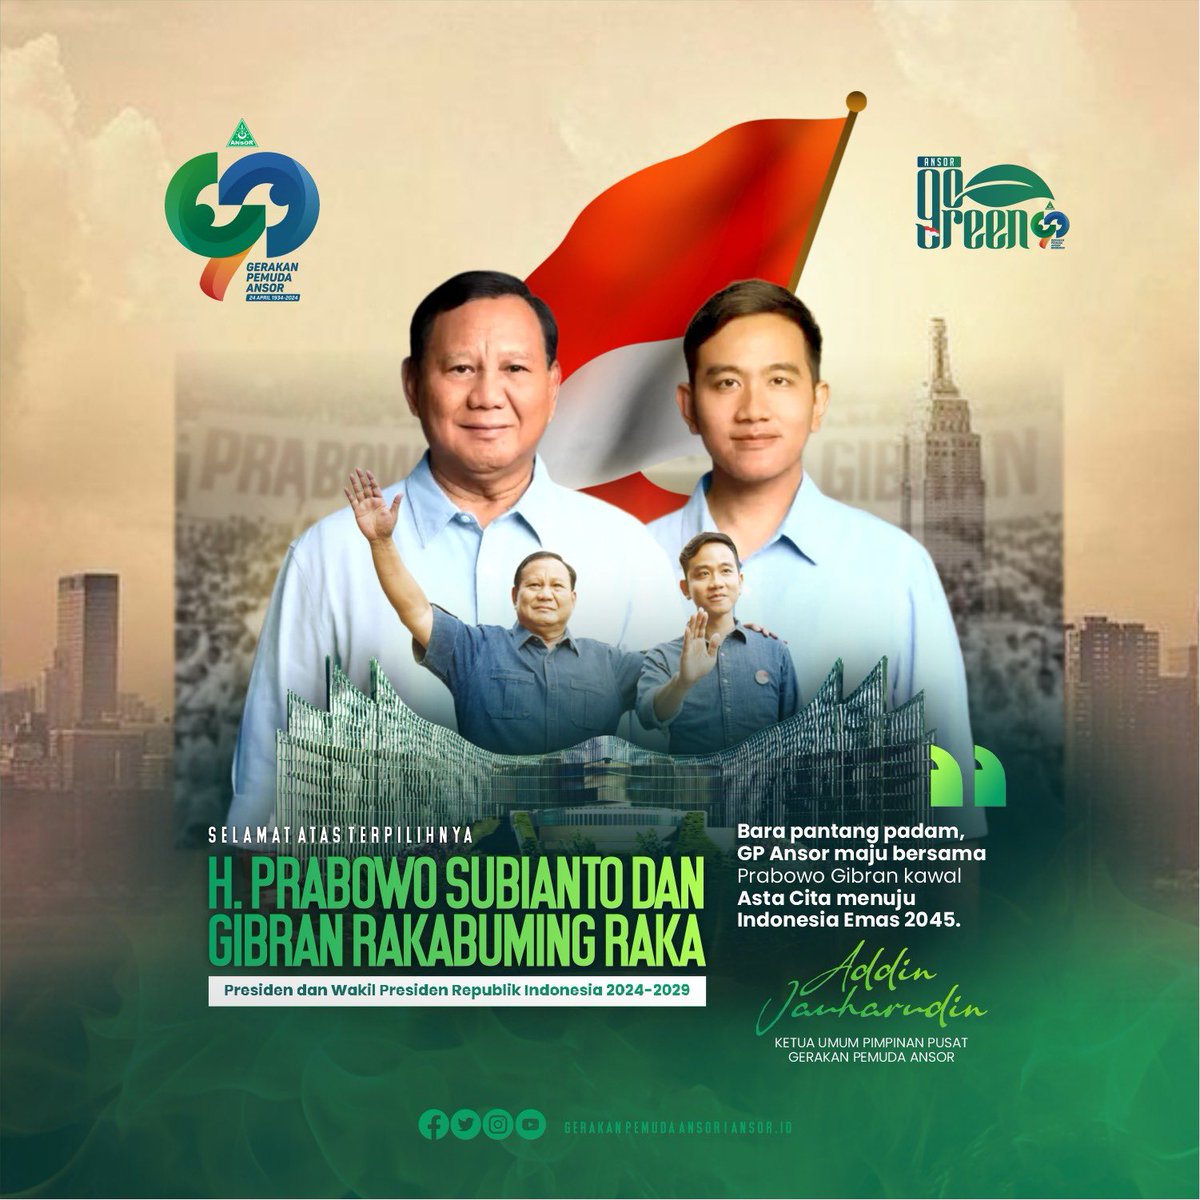 Selamat atas terpilihnya H. Prabowo Subianto dan Gibran Rakabuming Raka sebagai Presiden dan Wakil Presiden Republik Indonesia 2024-2029. Gairah muda kawal Asta Cita, GP Ansor bersama Prabowo Gibran menuju Indonesia Emas 2045.